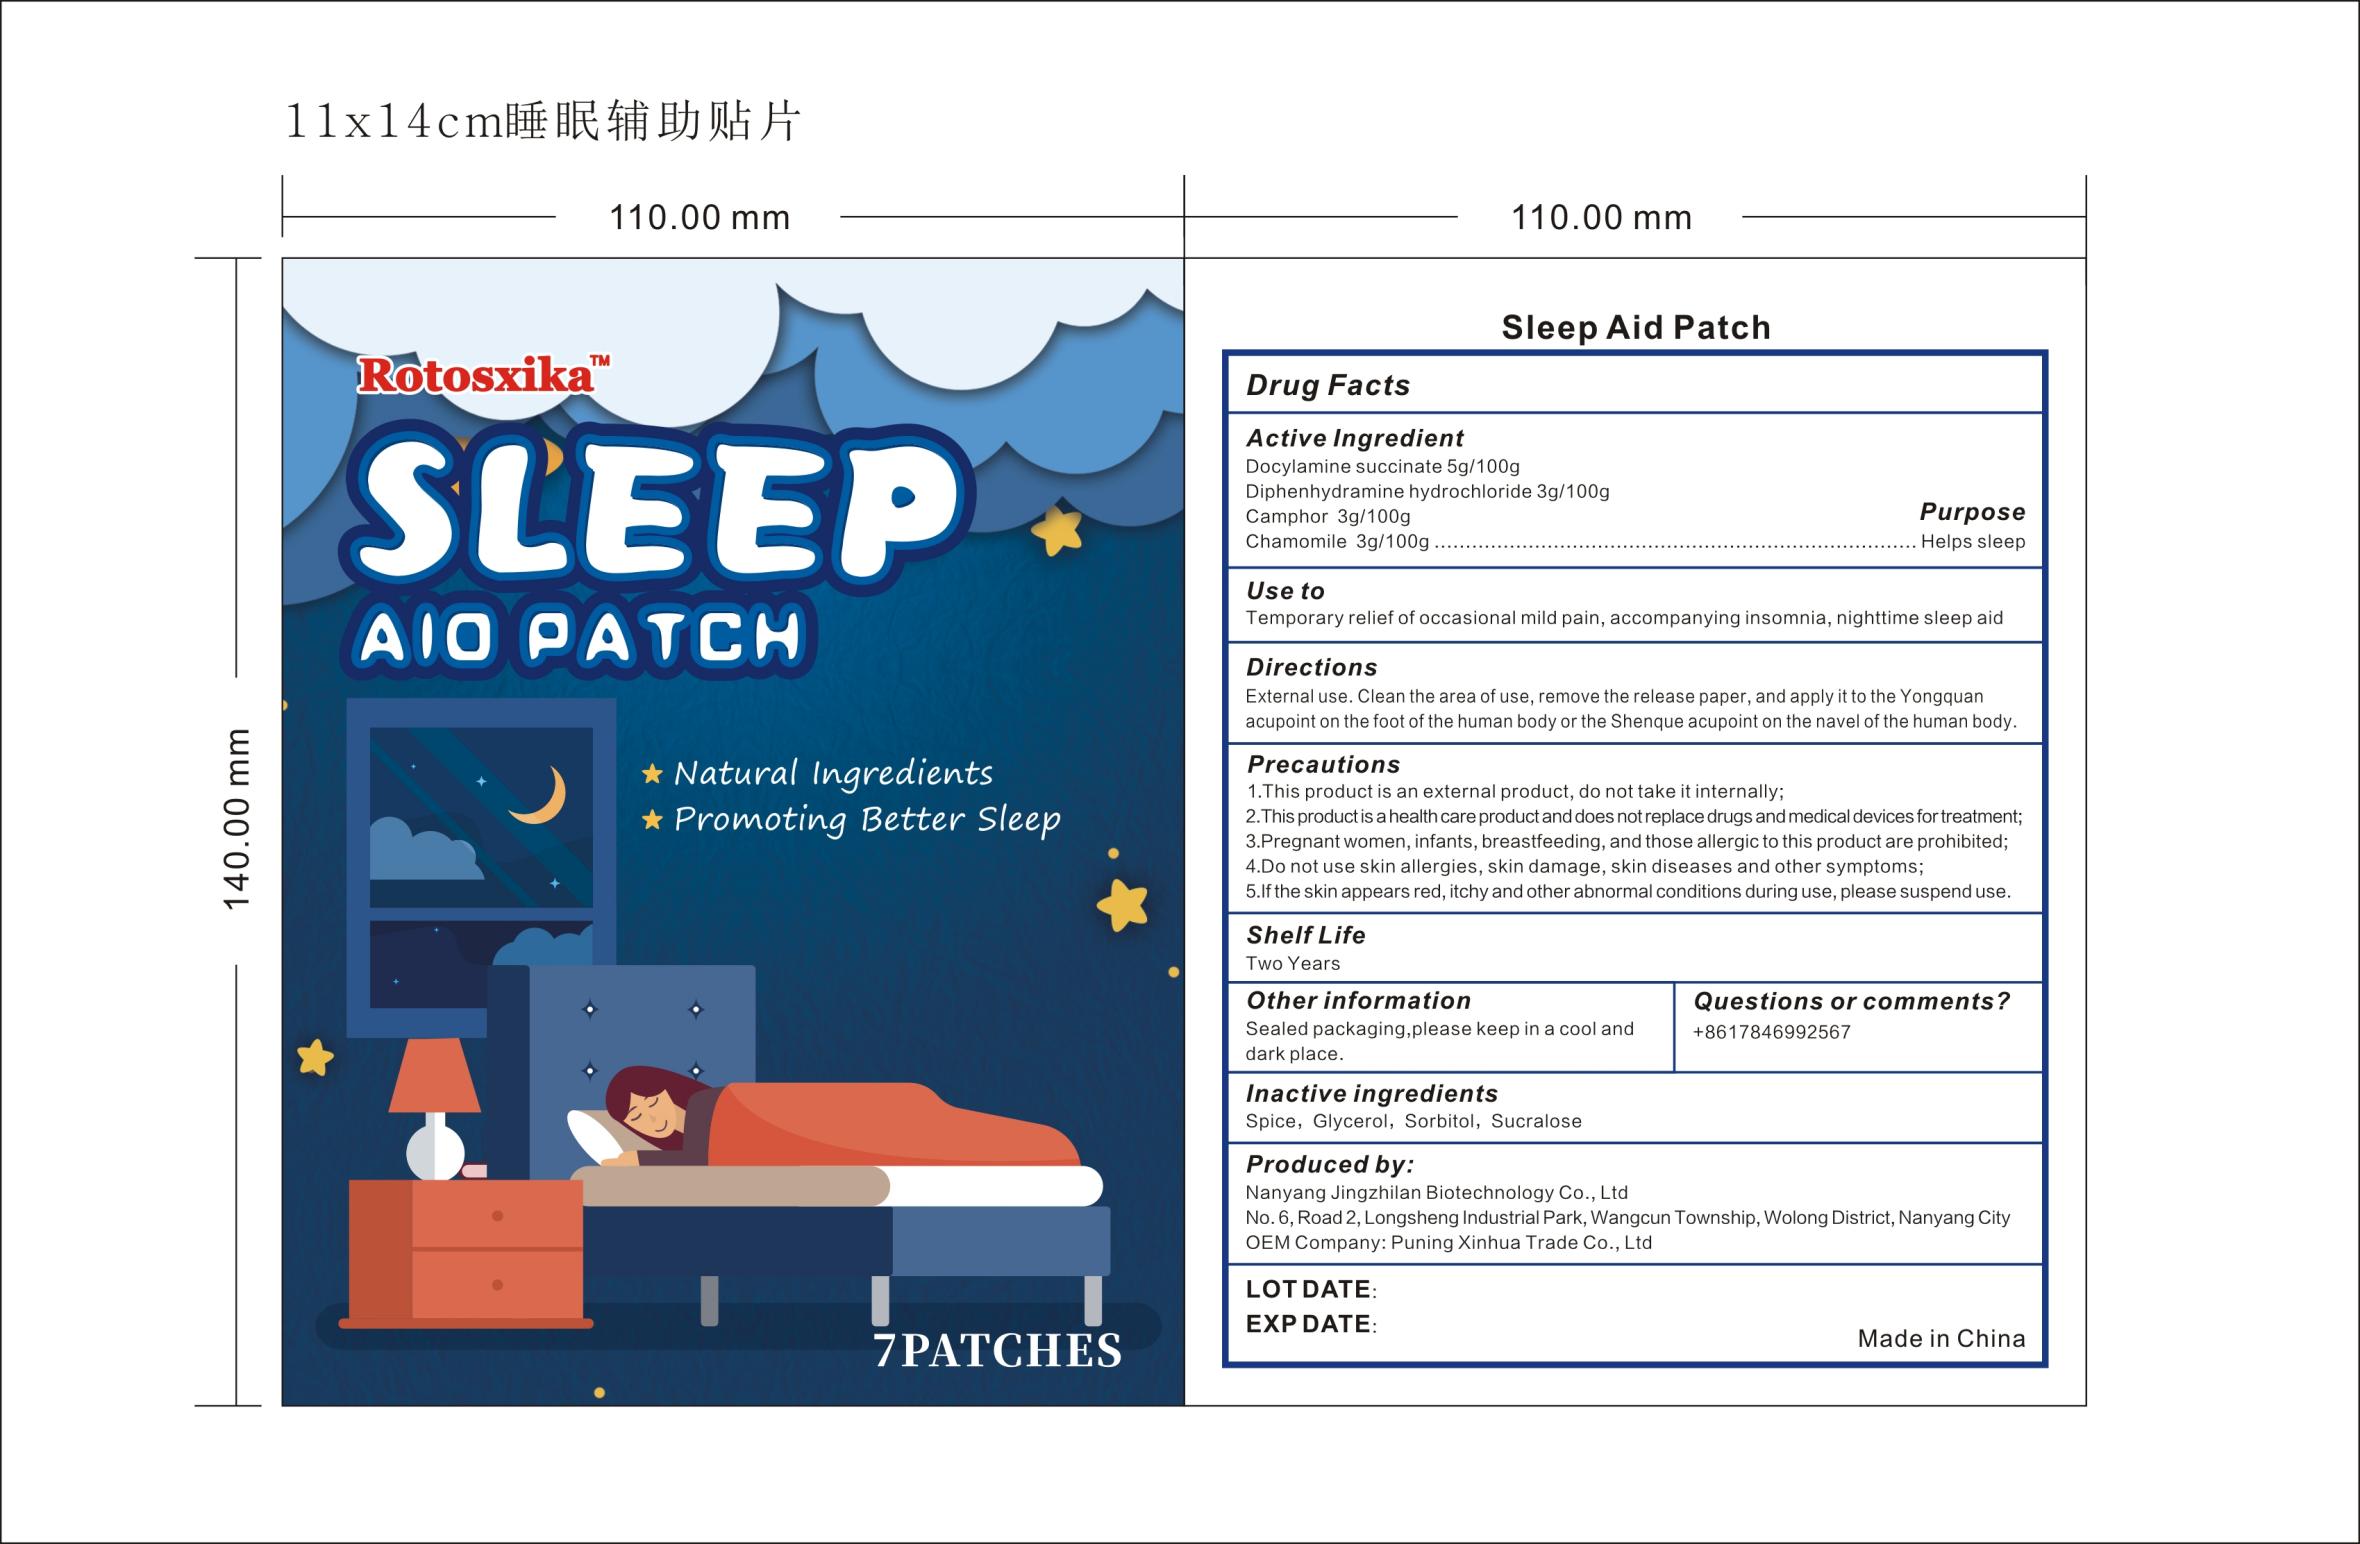 Rotosxika Sleep Aid Patch